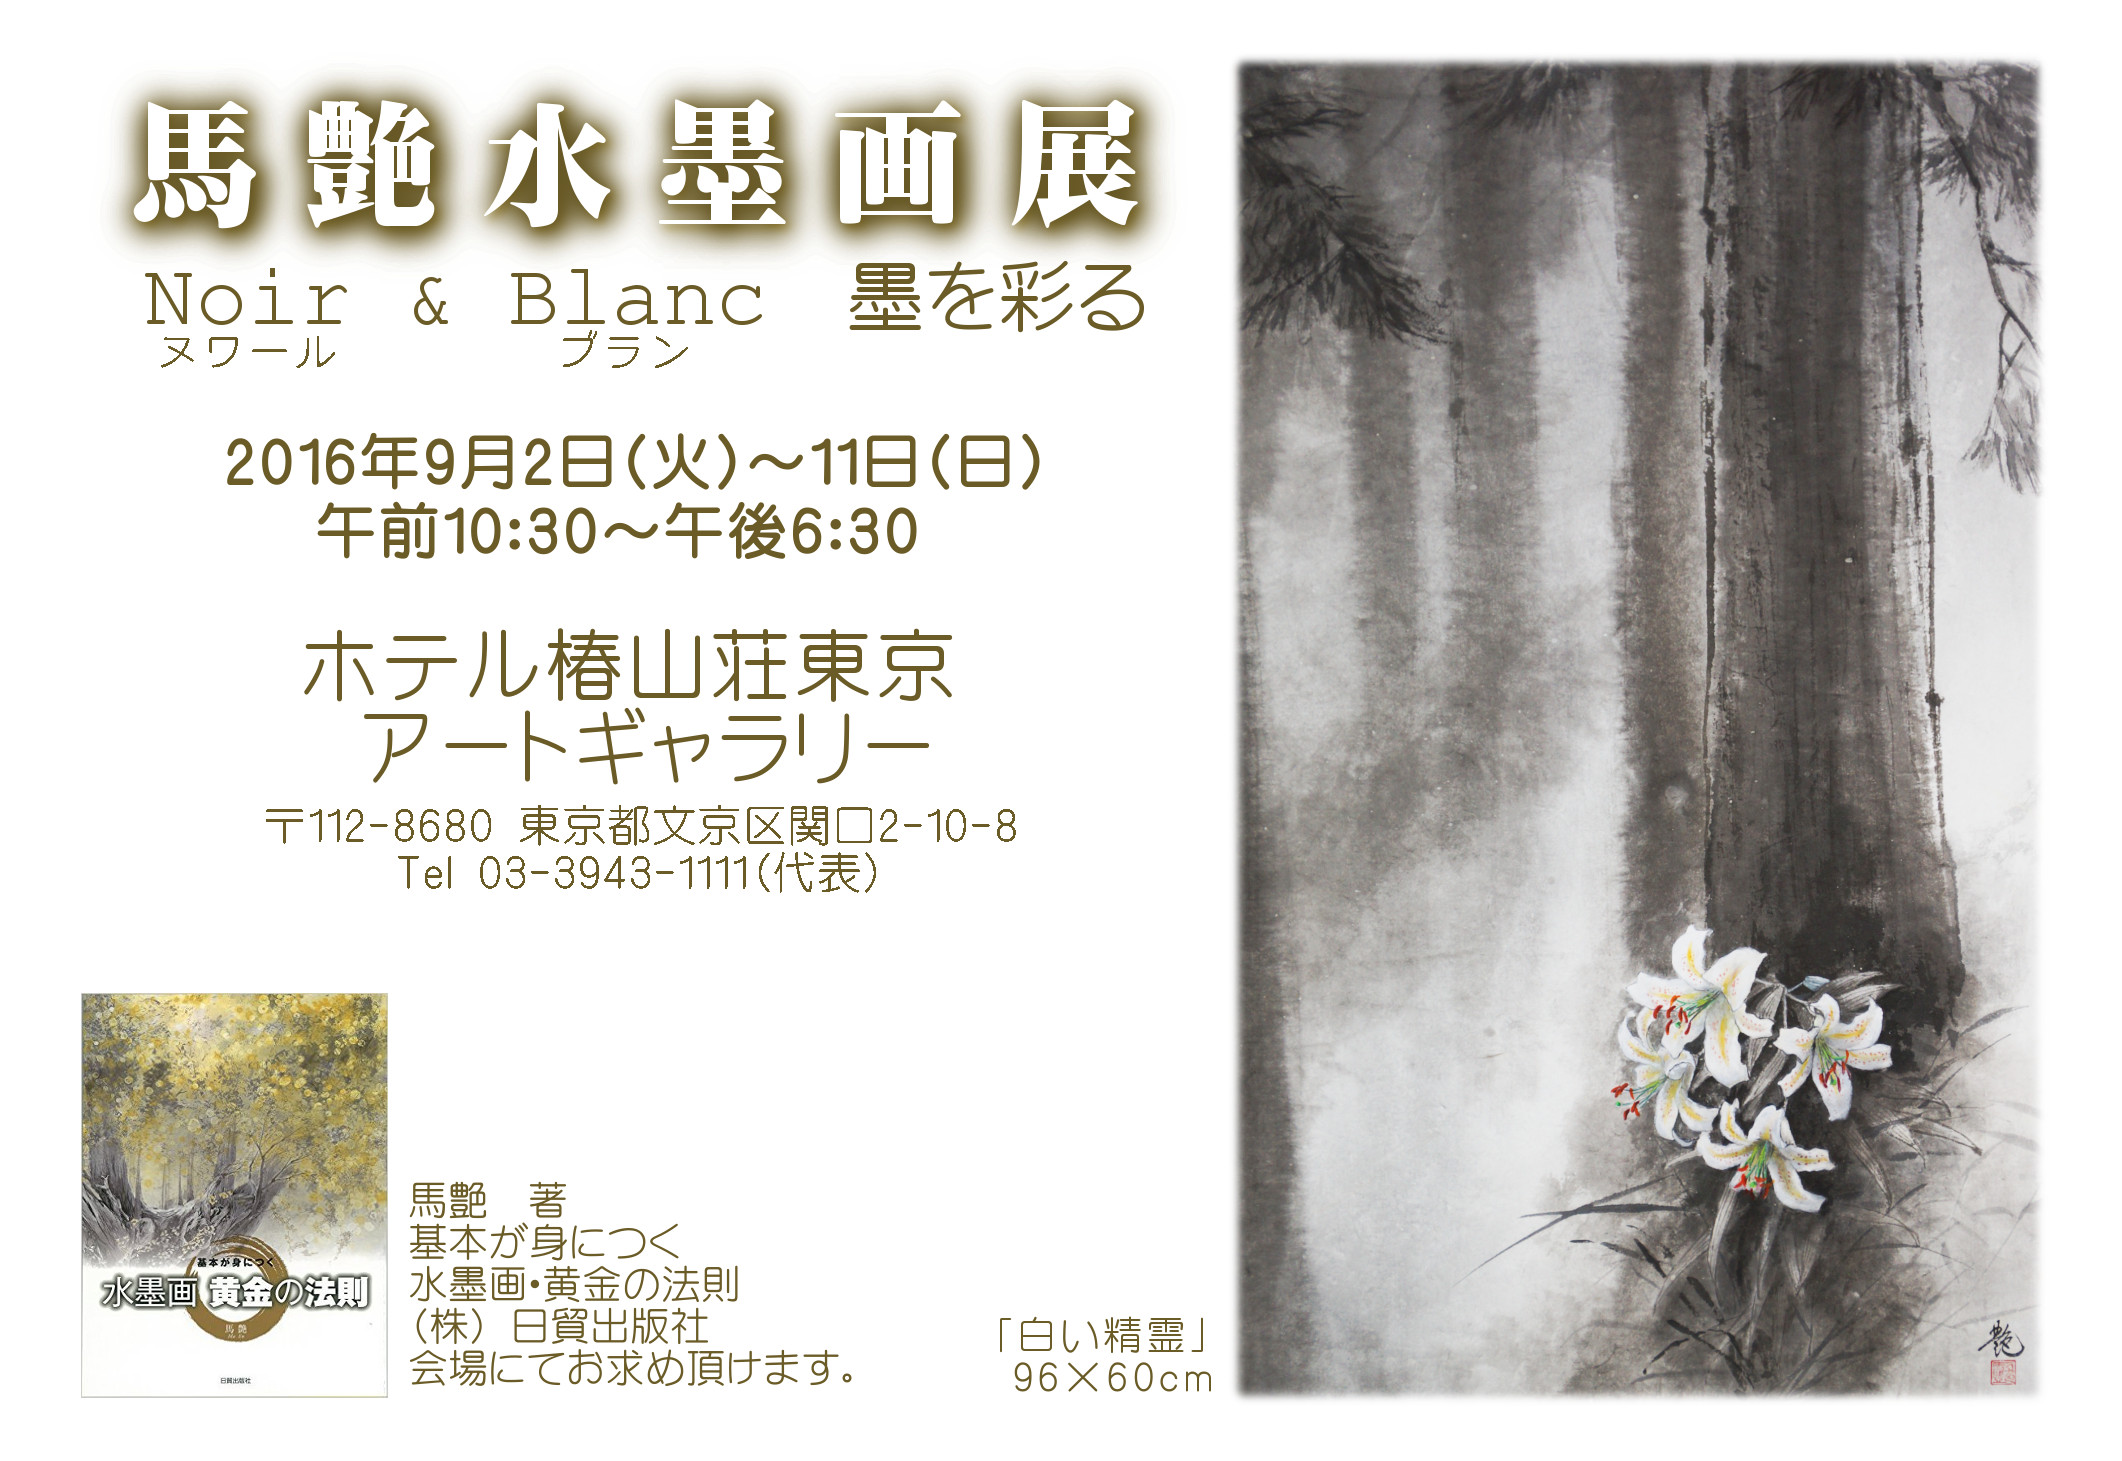 馬艶水墨画展 「Noir (黒) & Blanc (白) ・墨を彩る」in ホテル椿山荘東京